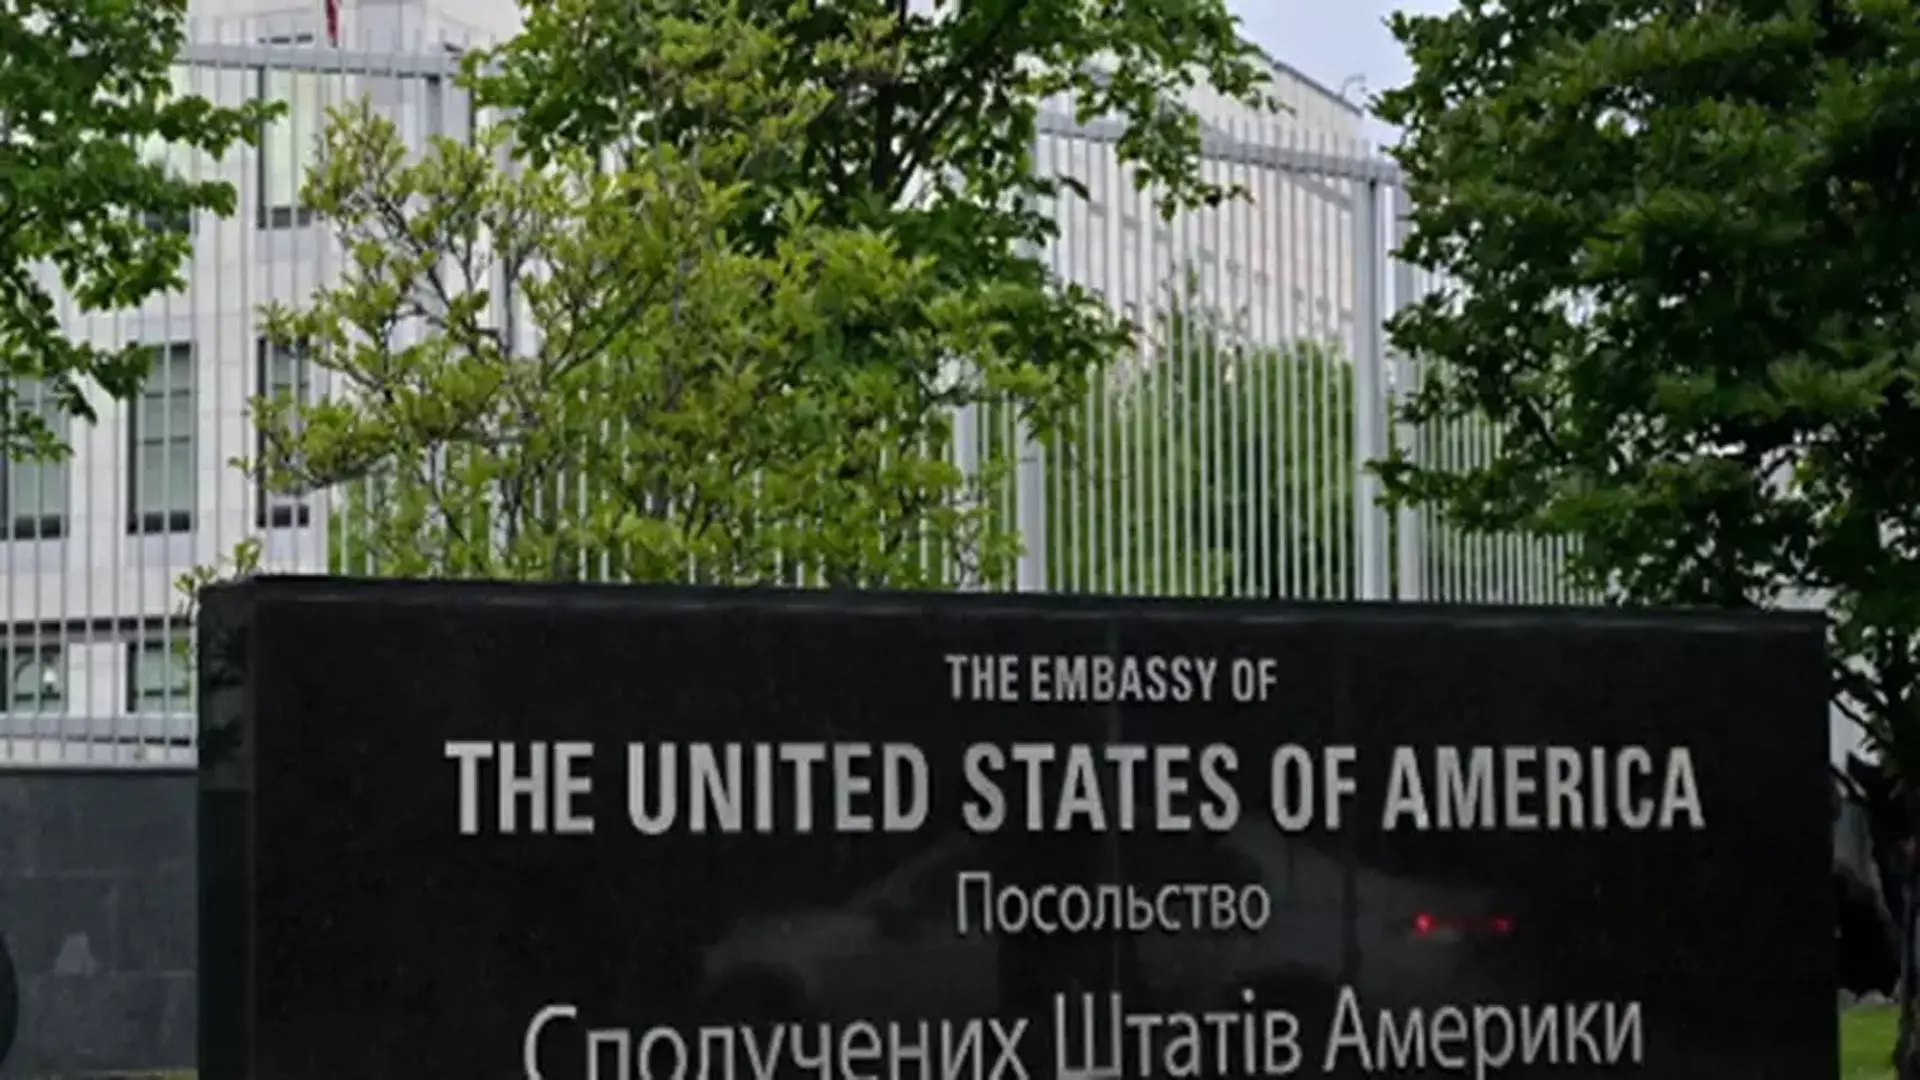 US दूतावास का कर्मचारी कीव के होटल में मृत पाया गया